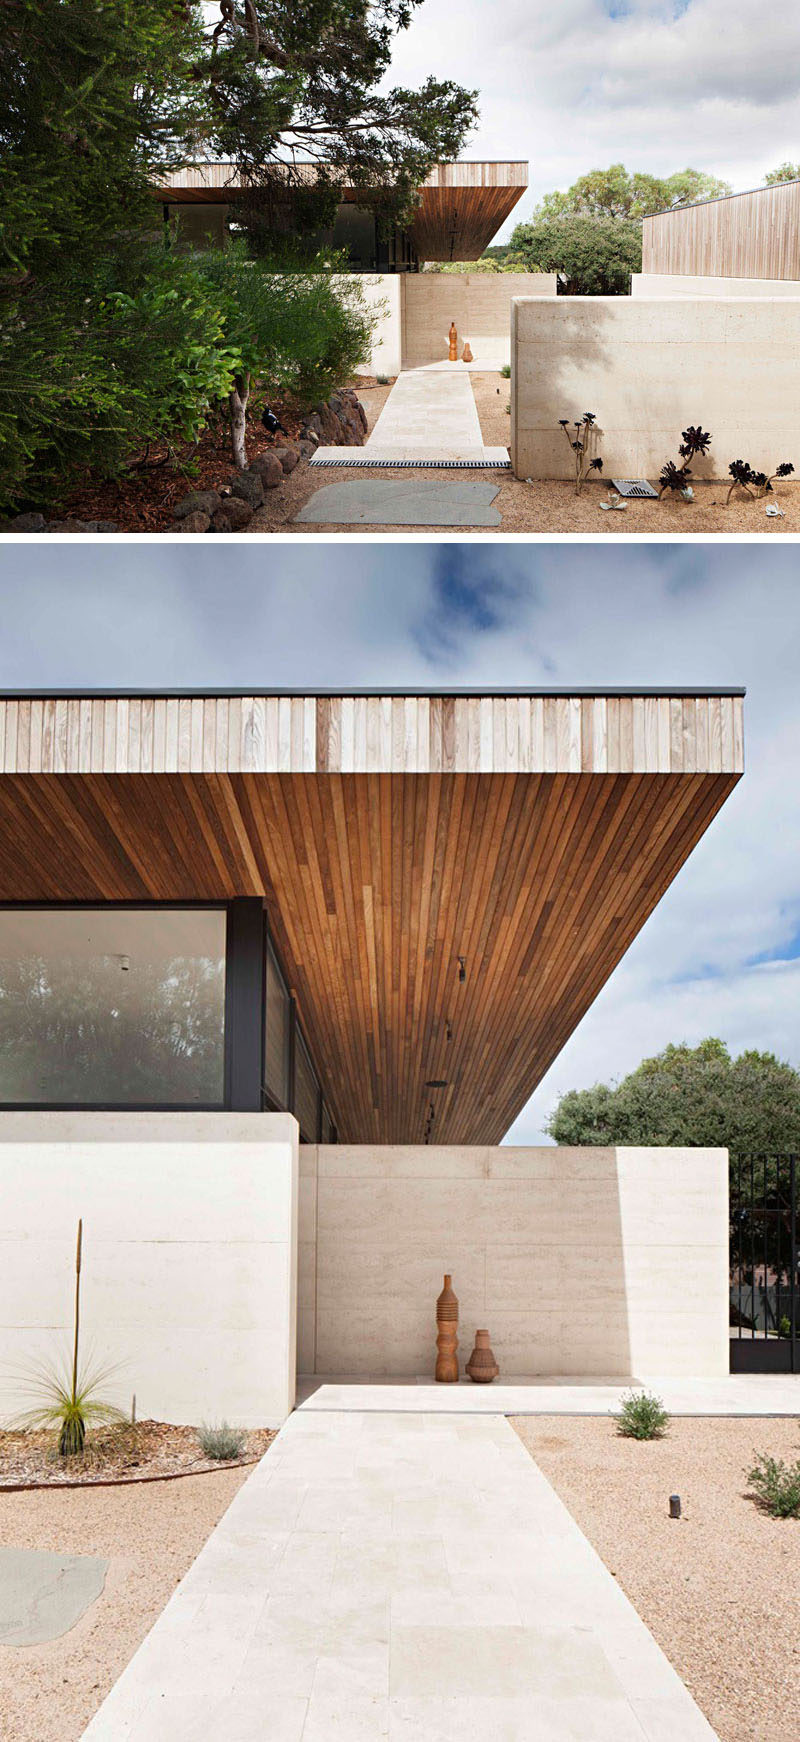  Архитекторы и дизайнеры интерьеров Робсон Рак недавно завершили строительство Layer House, дома в Виктории, Австралия, построенного из утрамбованной земли и древесины 